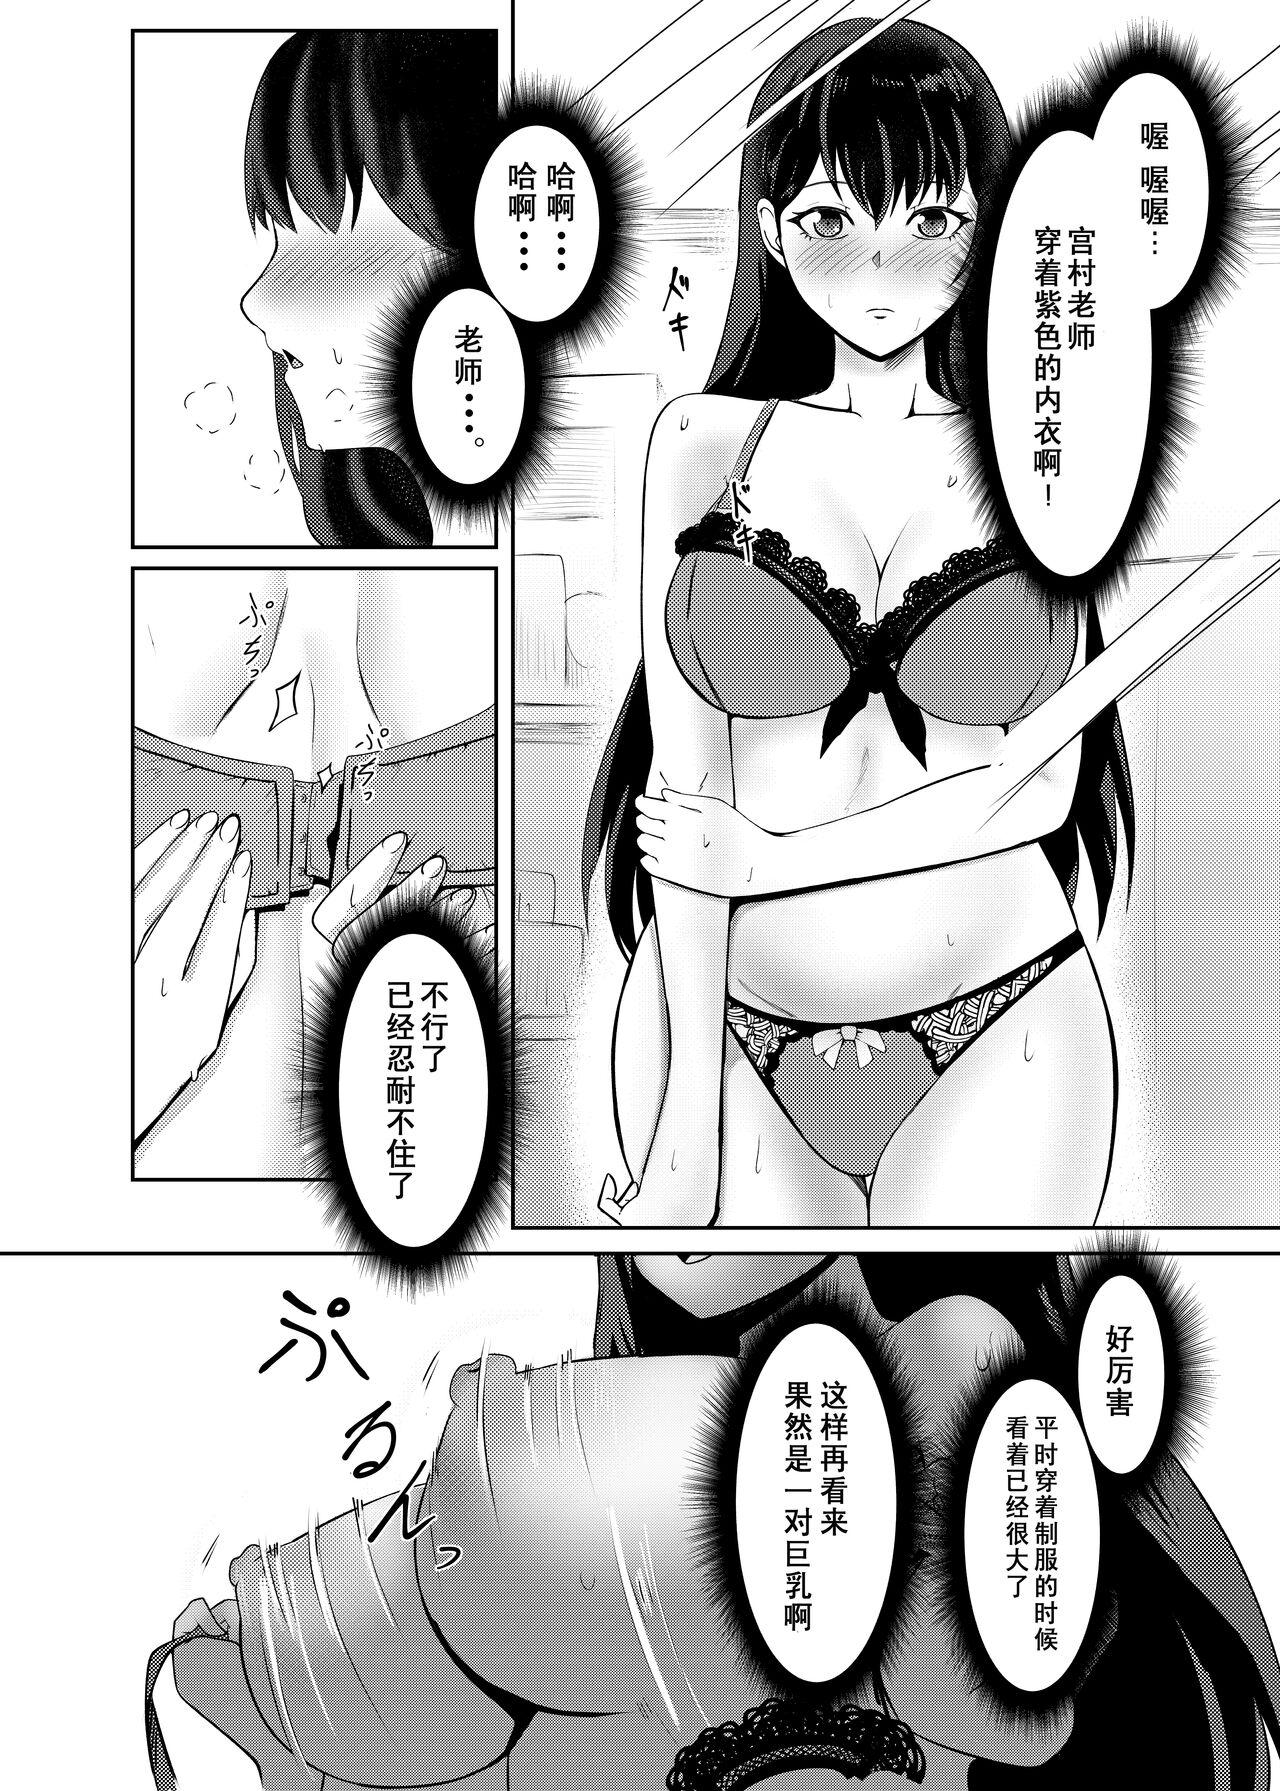 Lesbos Ore wa Miyamura sensei - Original Horny - Page 11